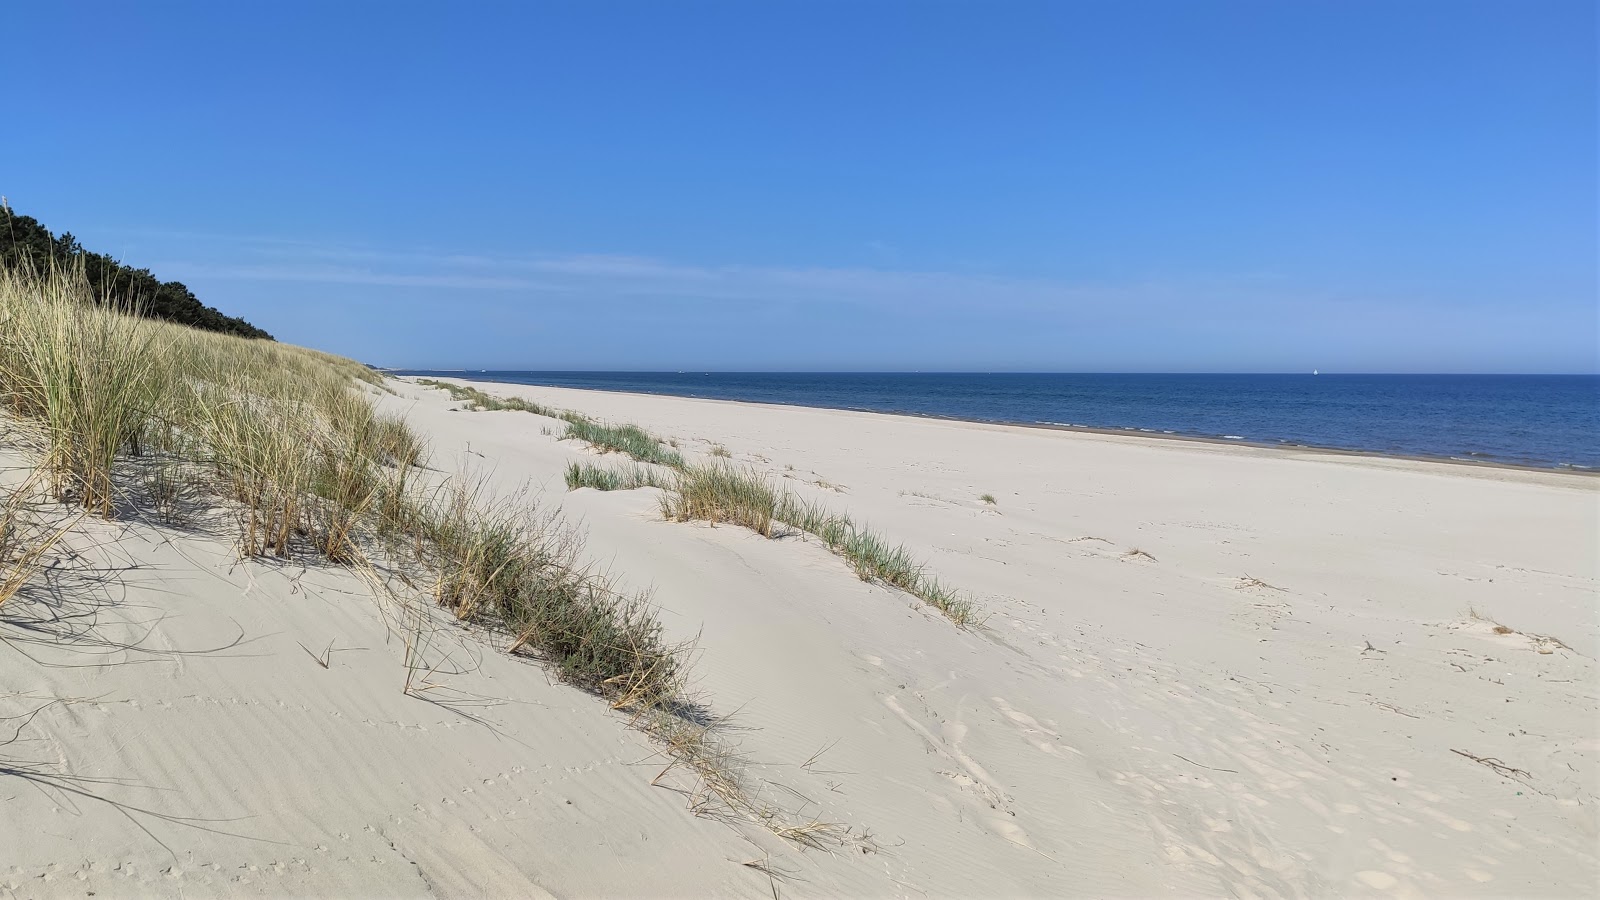 Fotografie cu Mierzeja Sarbska beach cu o suprafață de nisip strălucitor